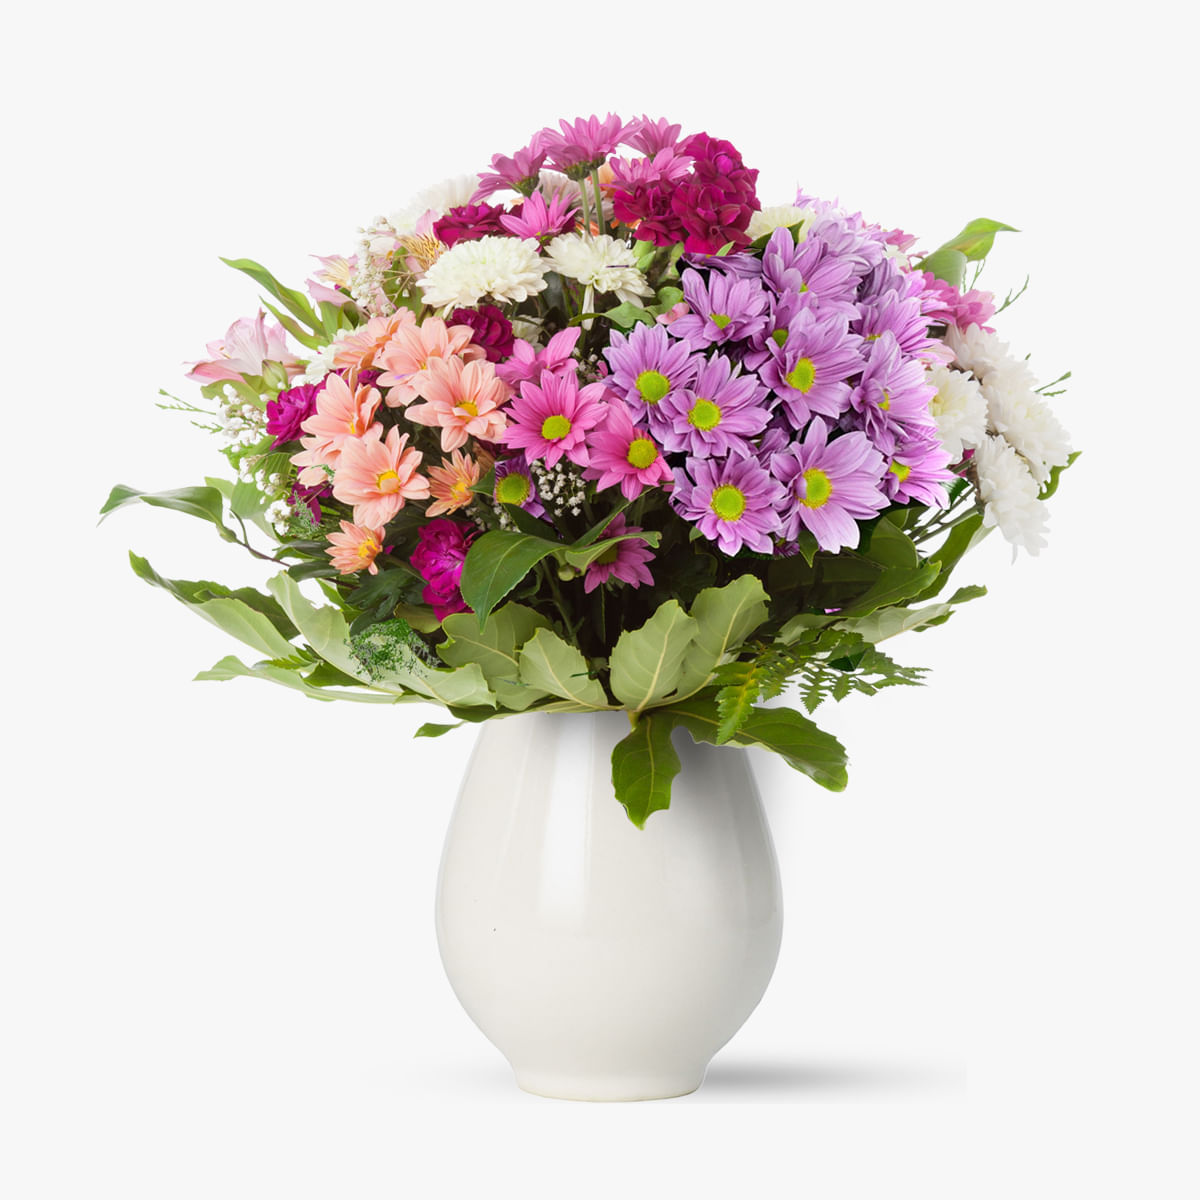 Buchet de 35 crizanteme multicolore vesel si colorat pentru zile senine